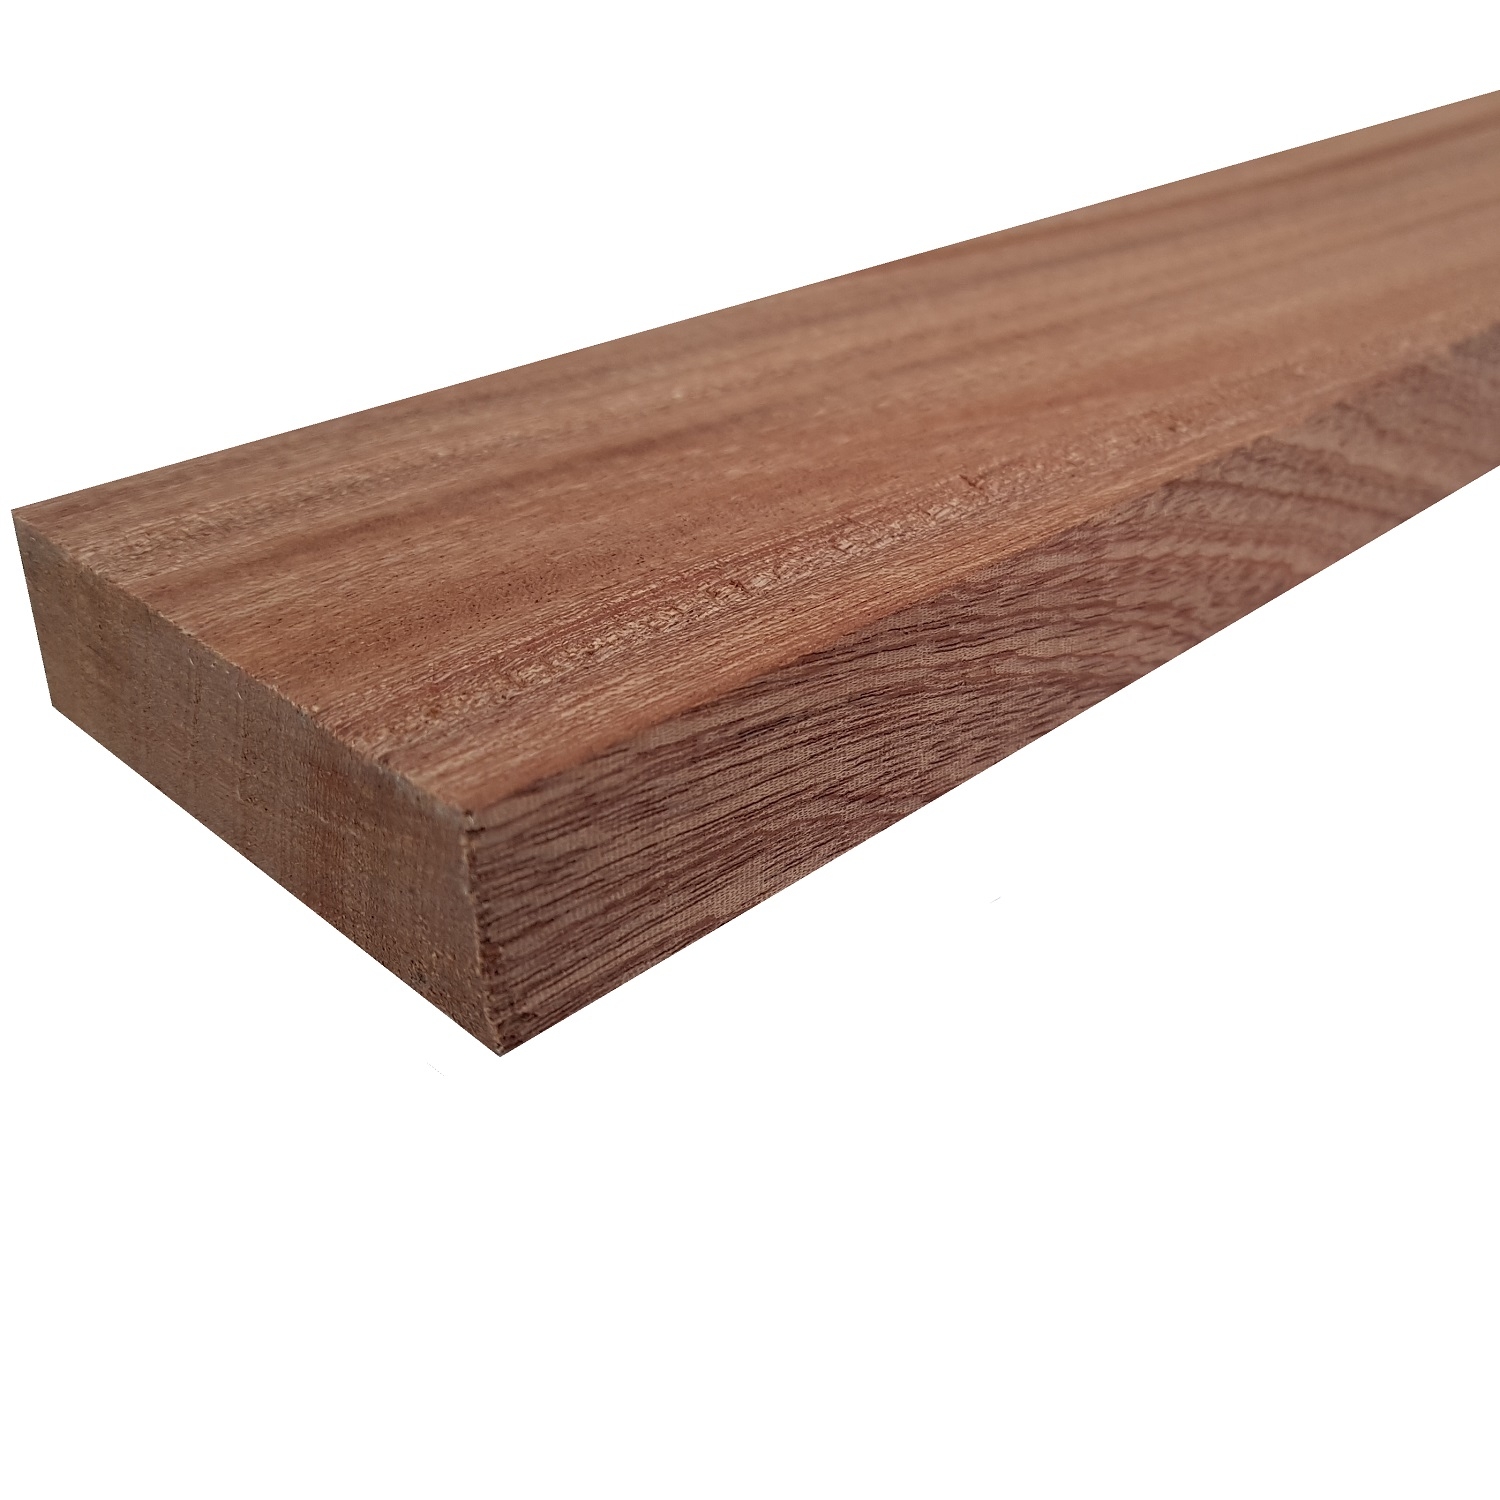 Tavola legno di Mogano Refilato Piallato mm 21 x 170 x 1550